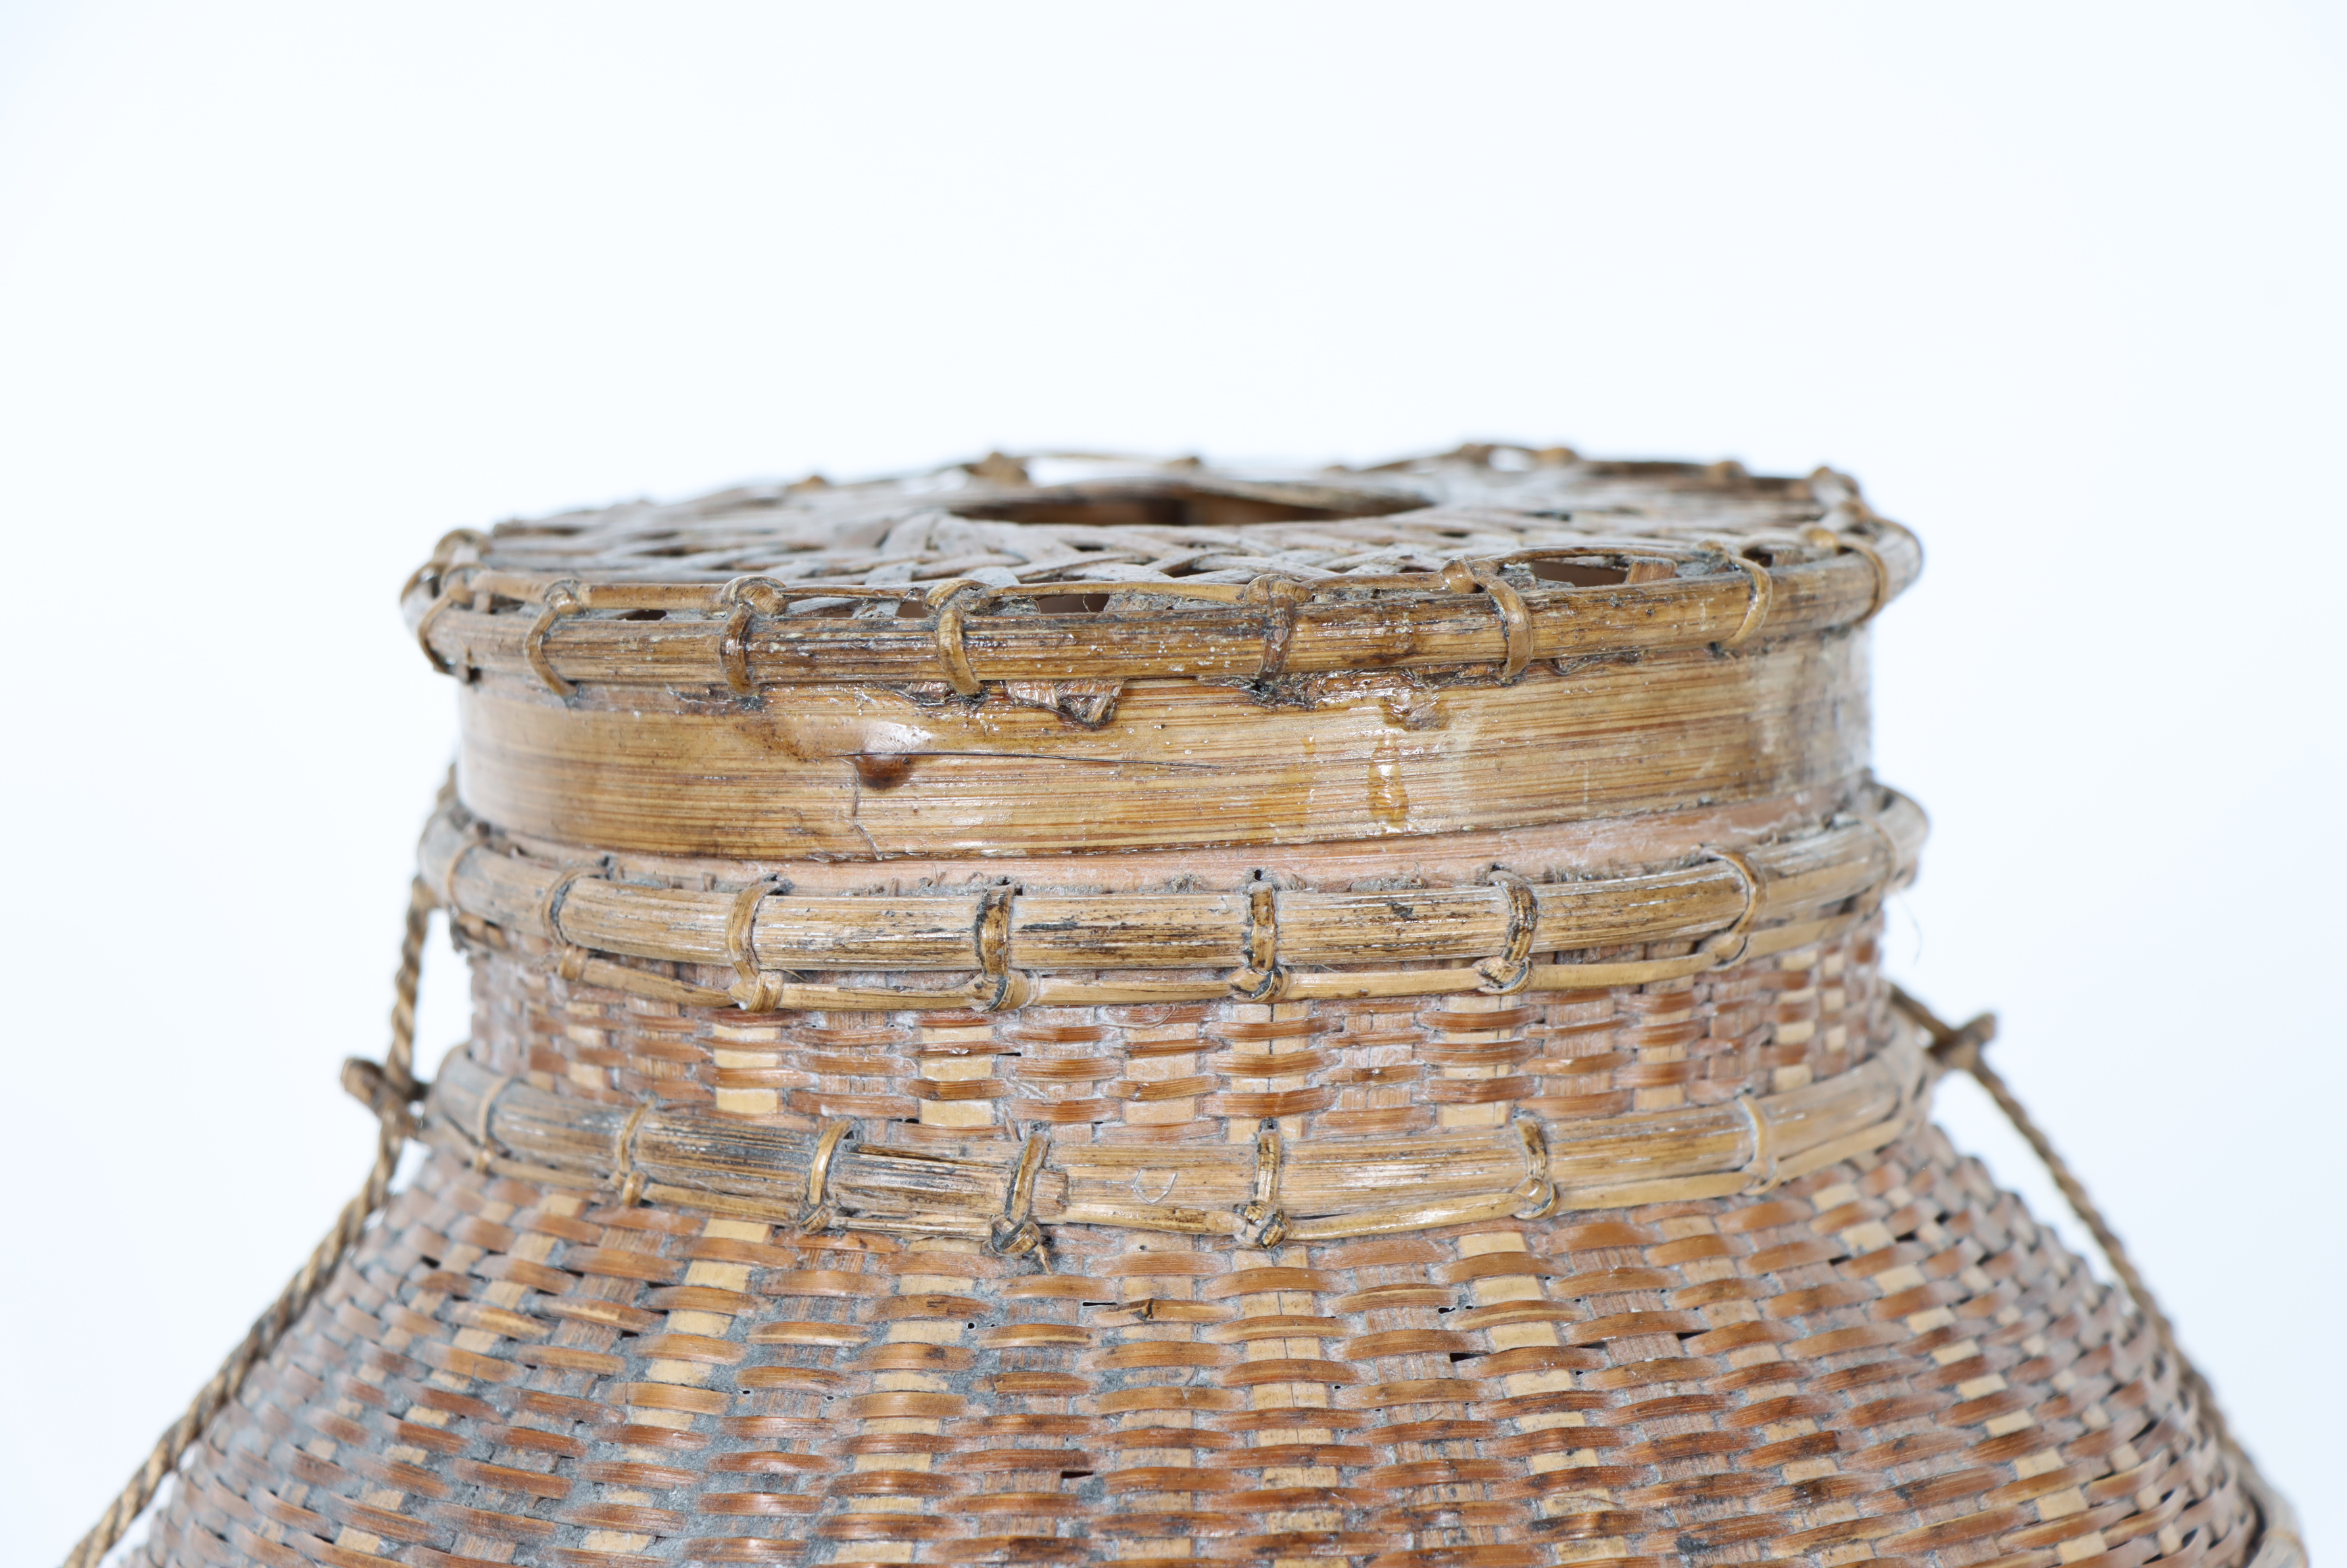 Woven Fishing Basket - Image 2 of 4